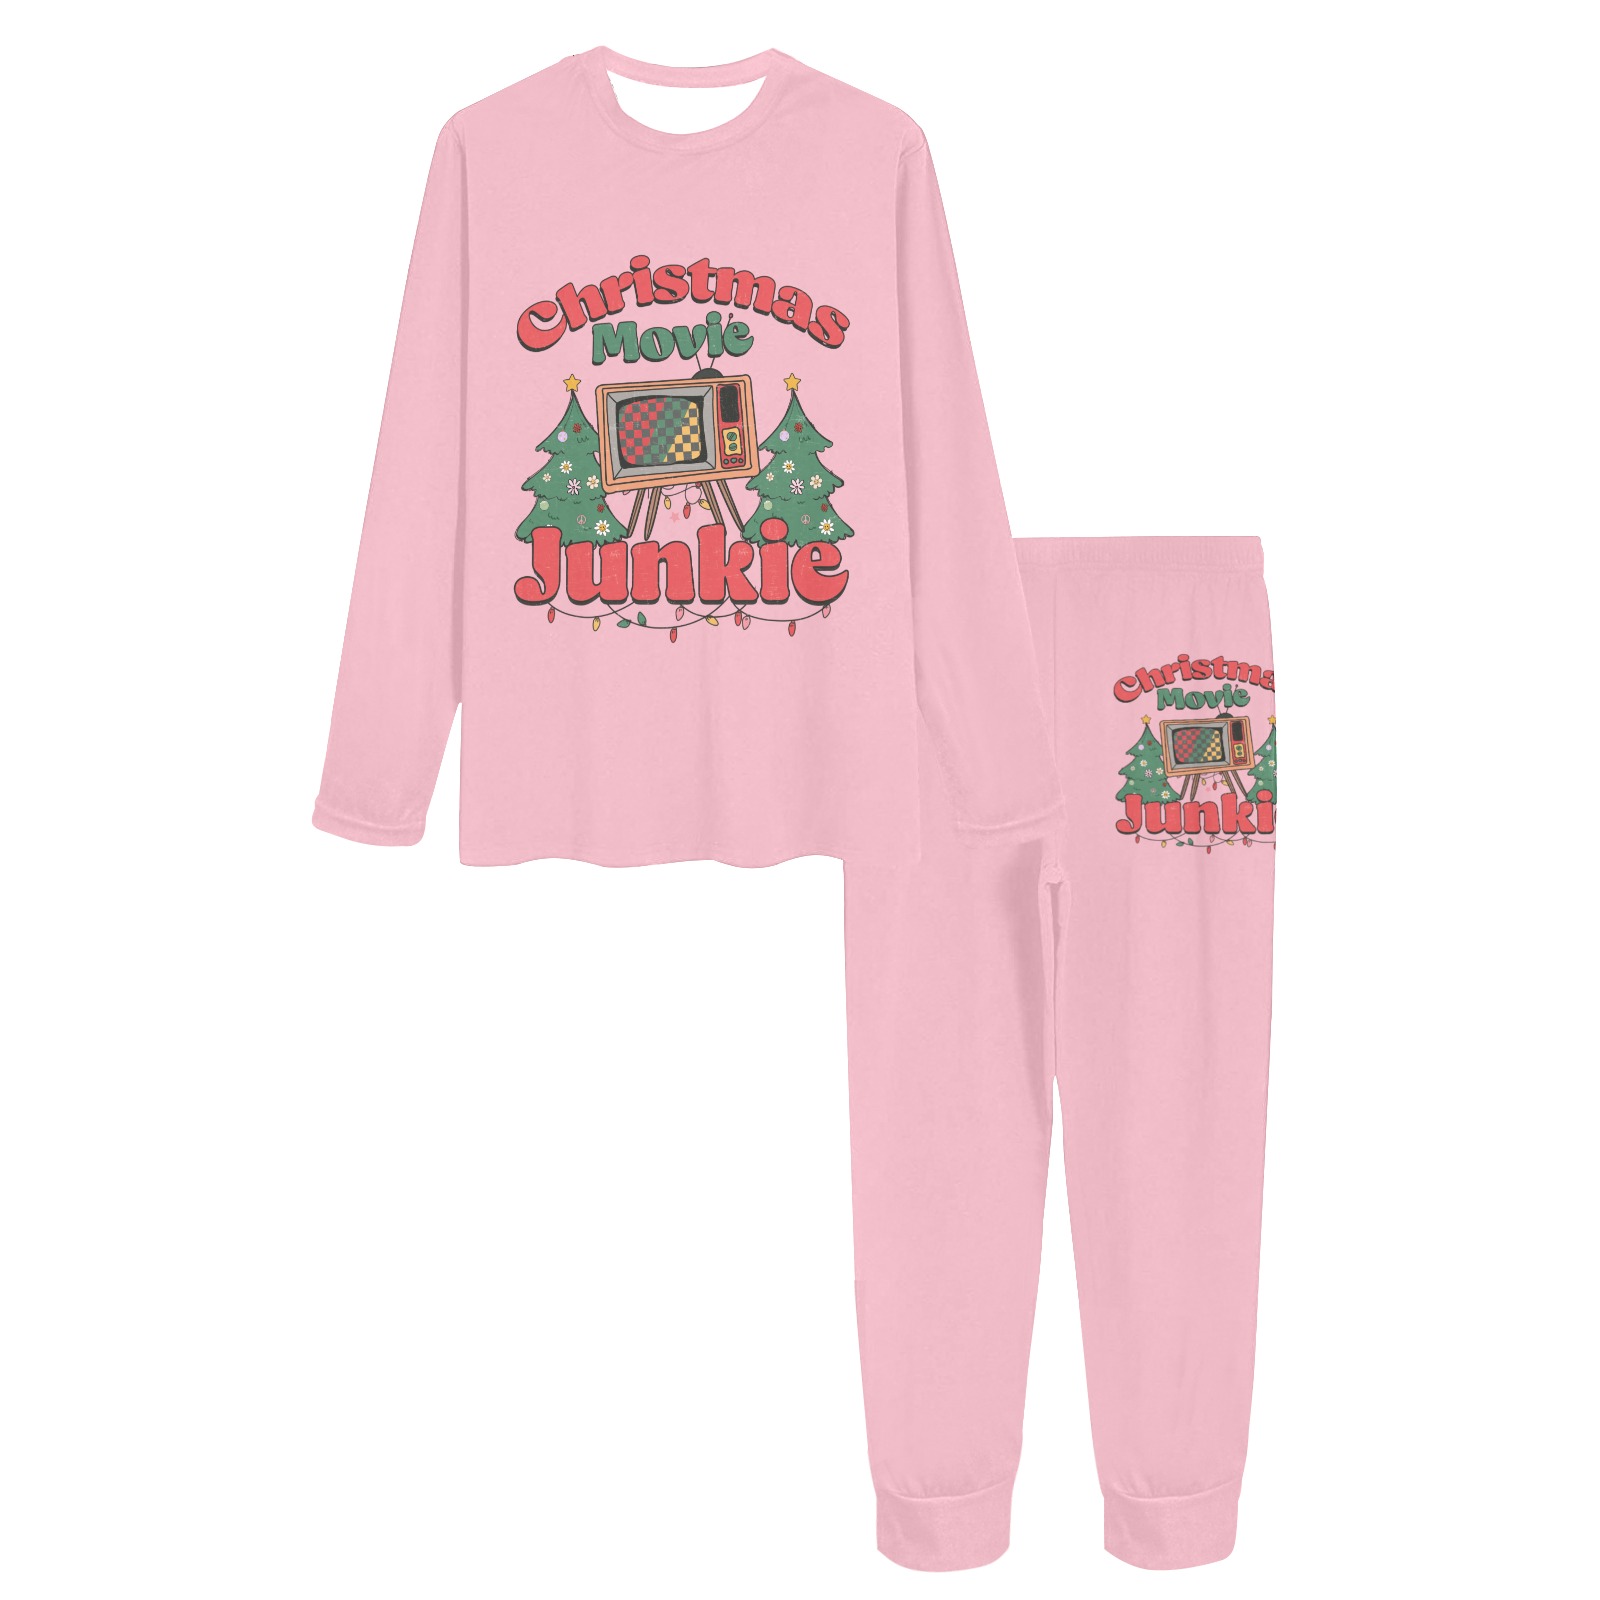 Christmas Movie Junkie (P) Women's All Over Print Pajama Set